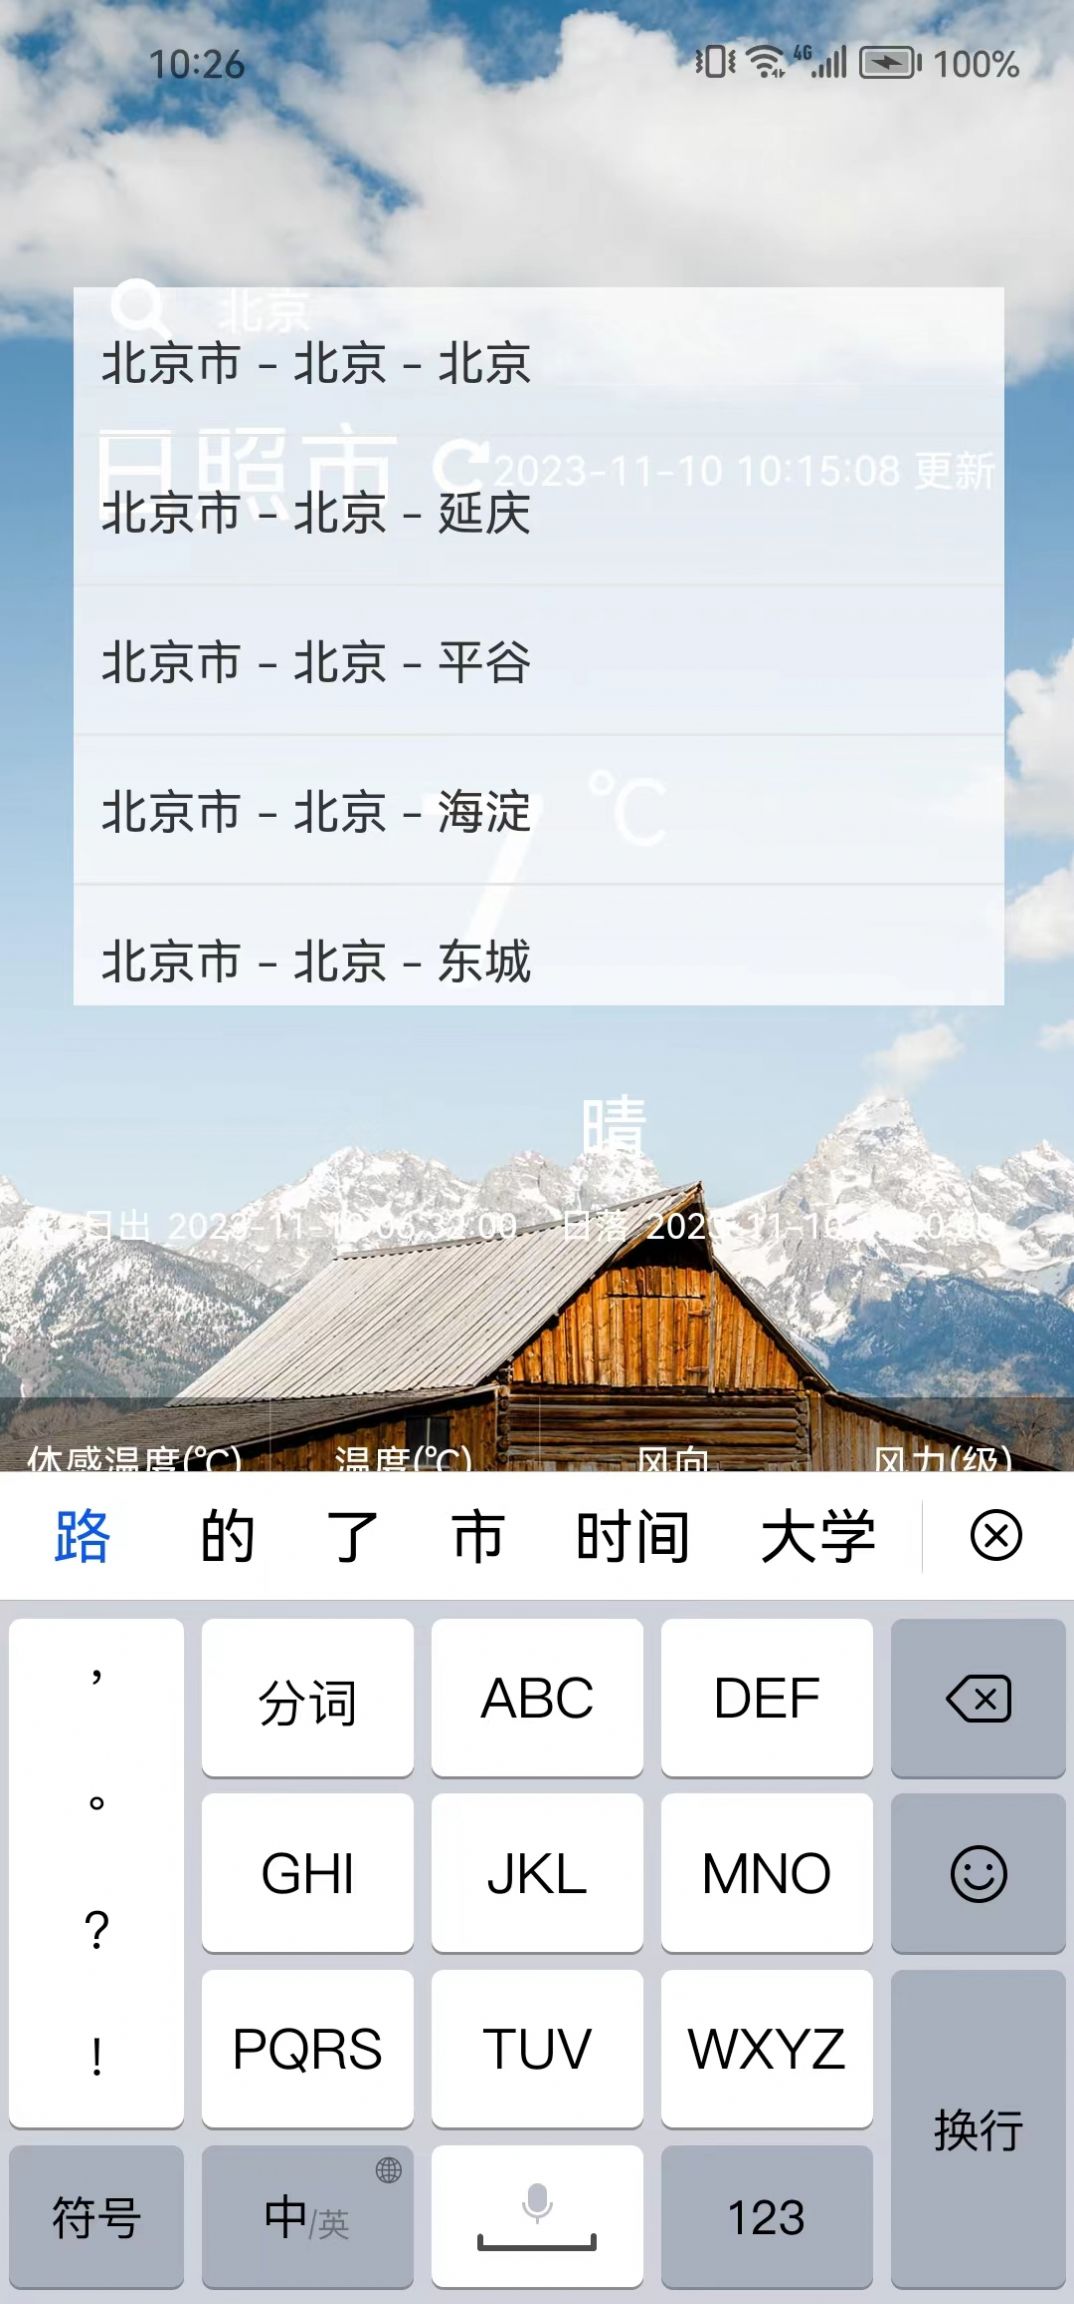 森森天气预报app手机版图片1